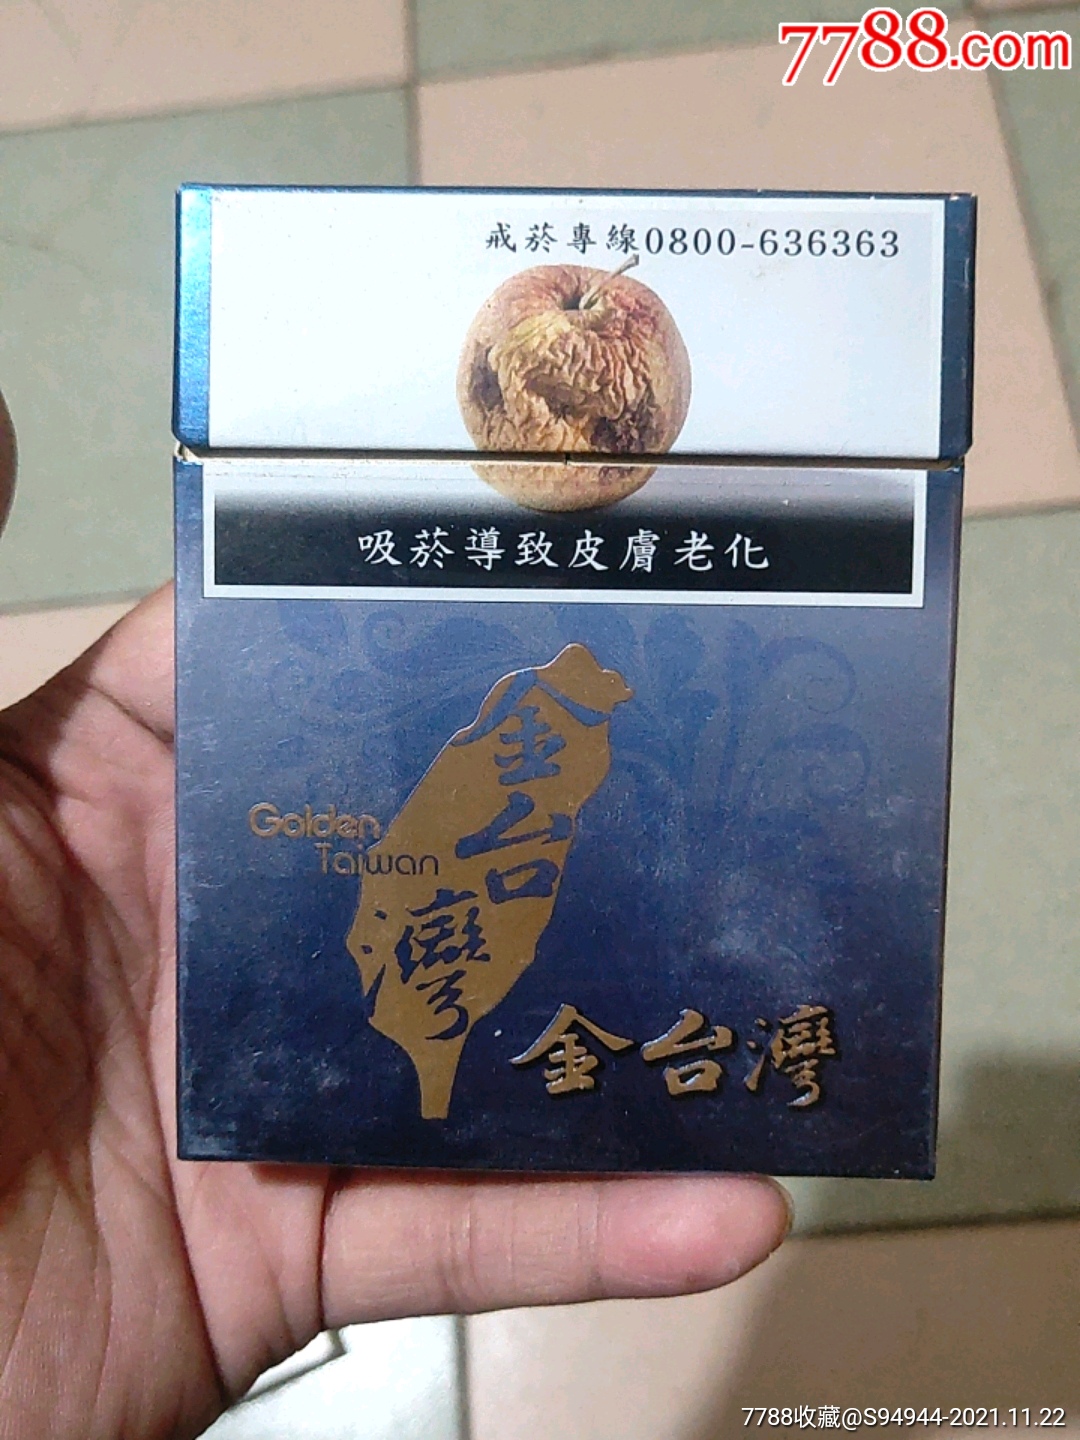 金台湾烟盒,红箱发货时间不定,急要的别拍